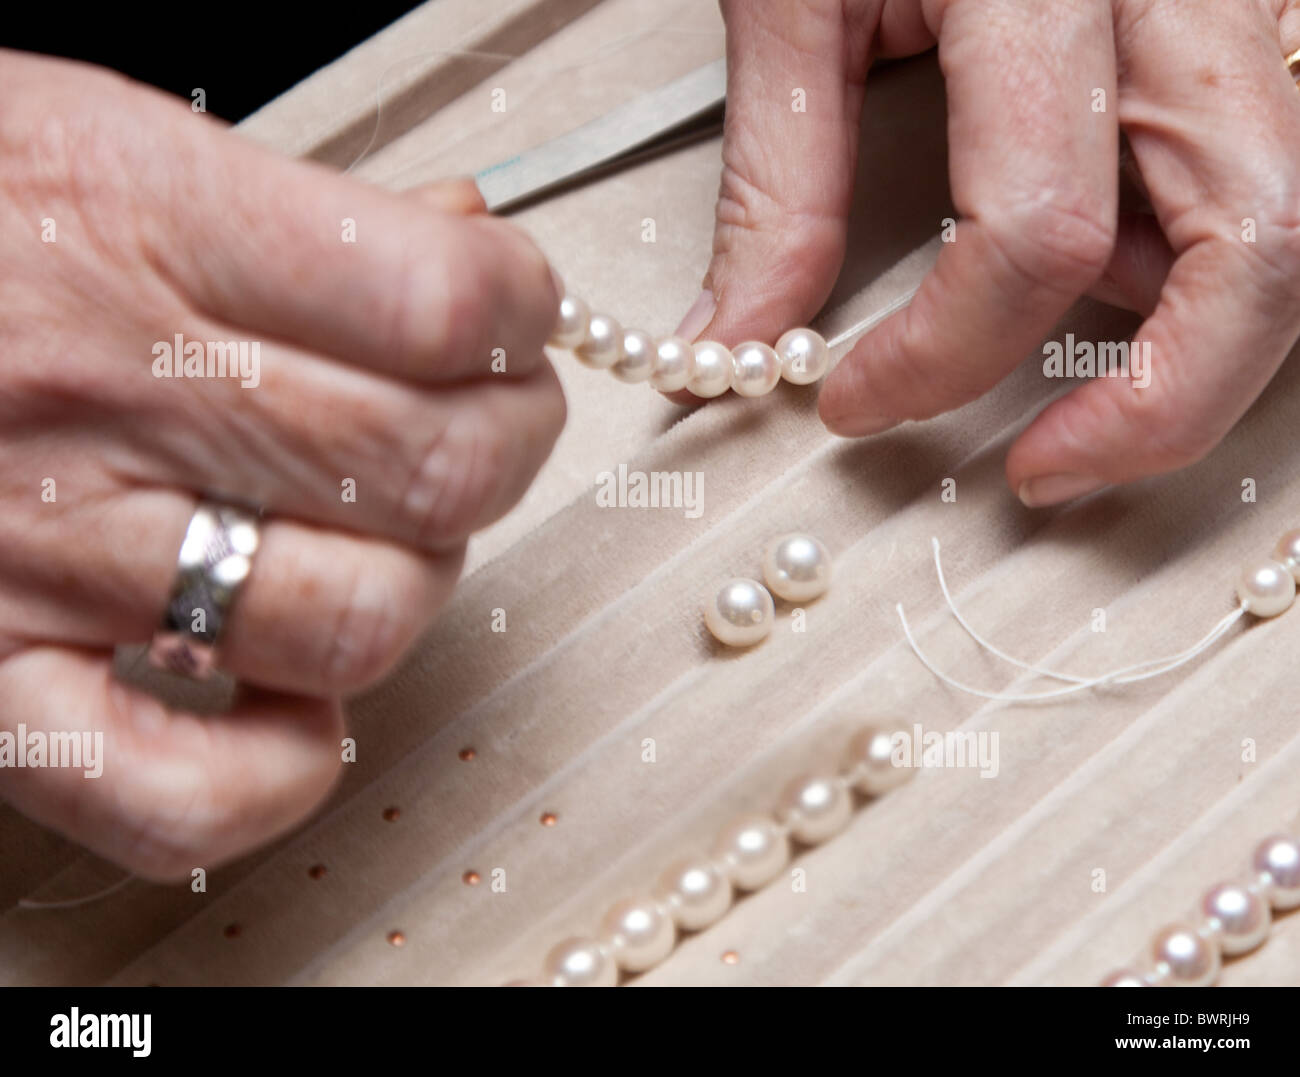 Chiudere la mano gioielliere stringing perle su una collana Foto Stock